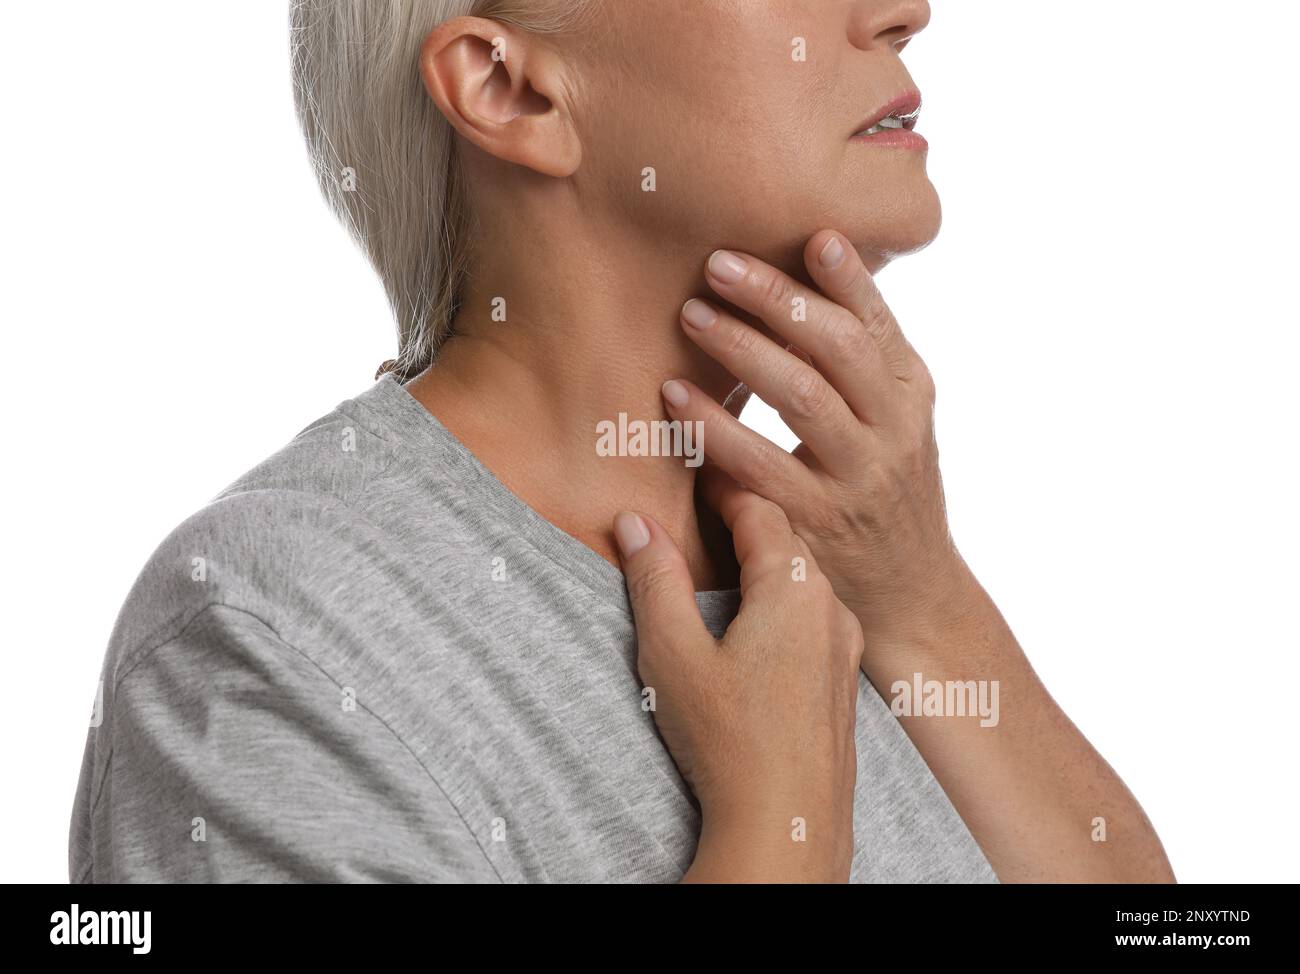 Reife Frau, die Schilddrüsen-Selbstuntersuchung auf weißem Hintergrund macht, Nahaufnahme Stockfoto